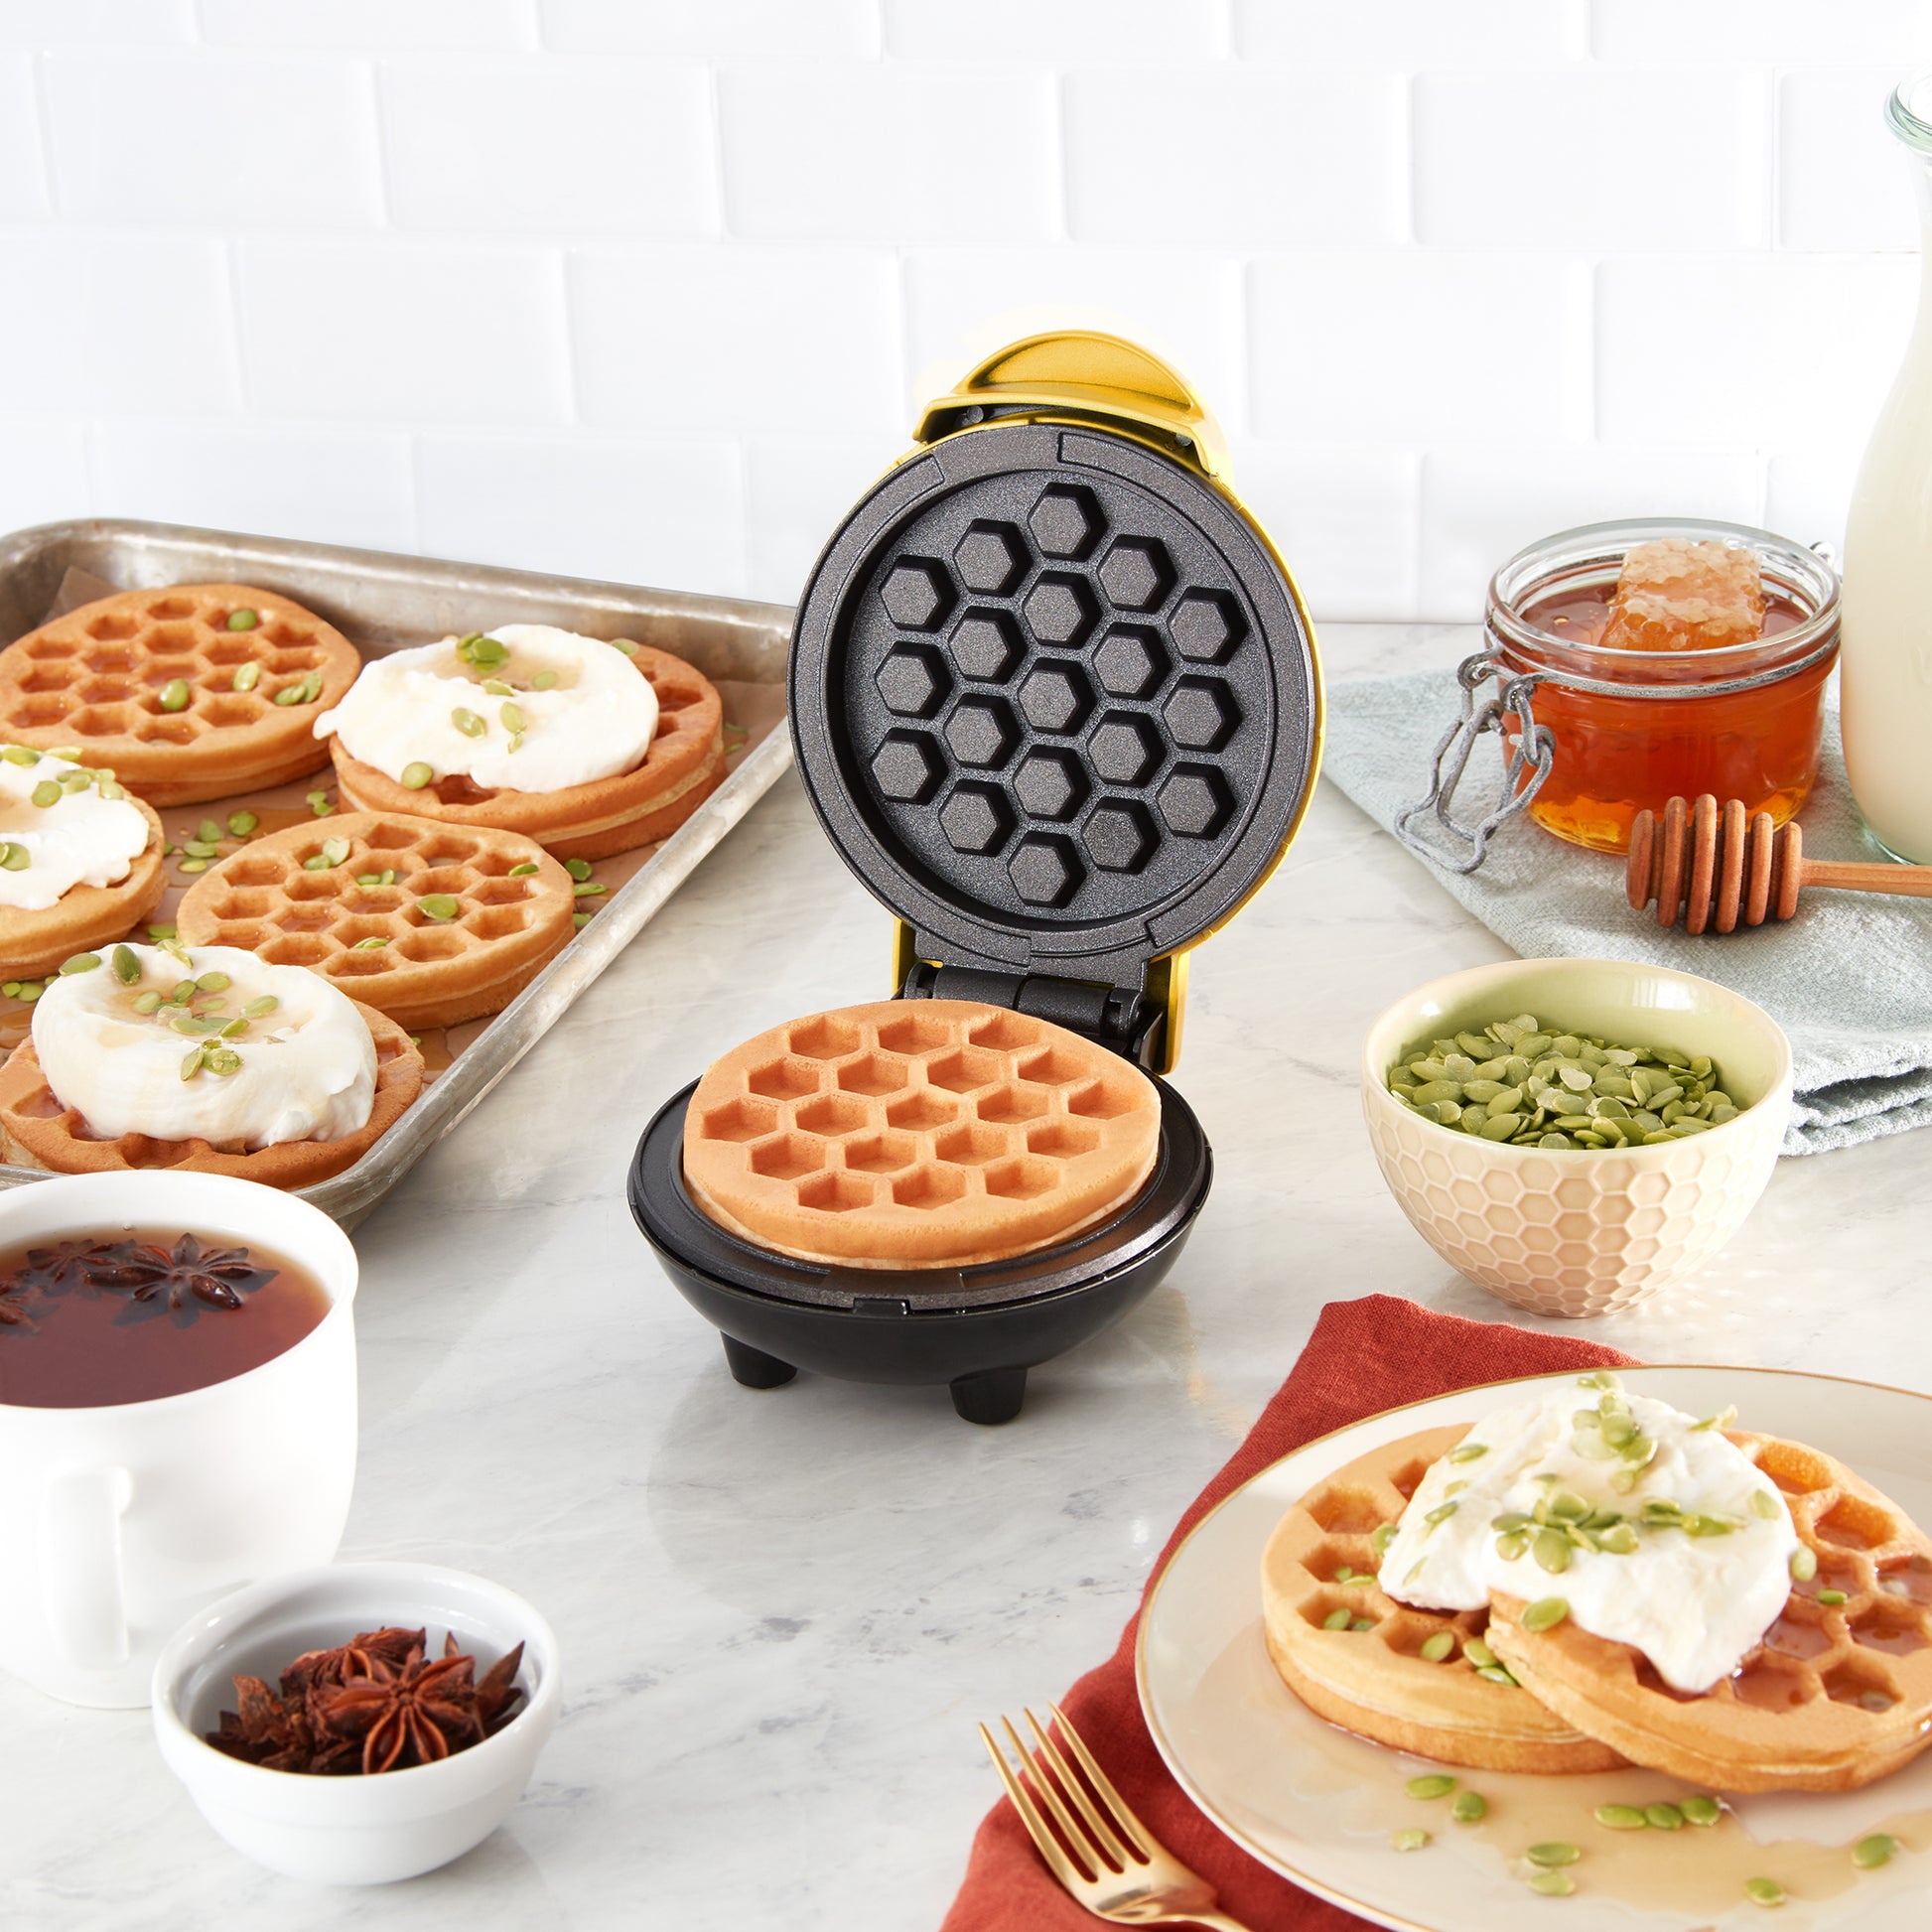  DASH Mini Maker Waffle Maker + Griddle, 2-Pack Griddle